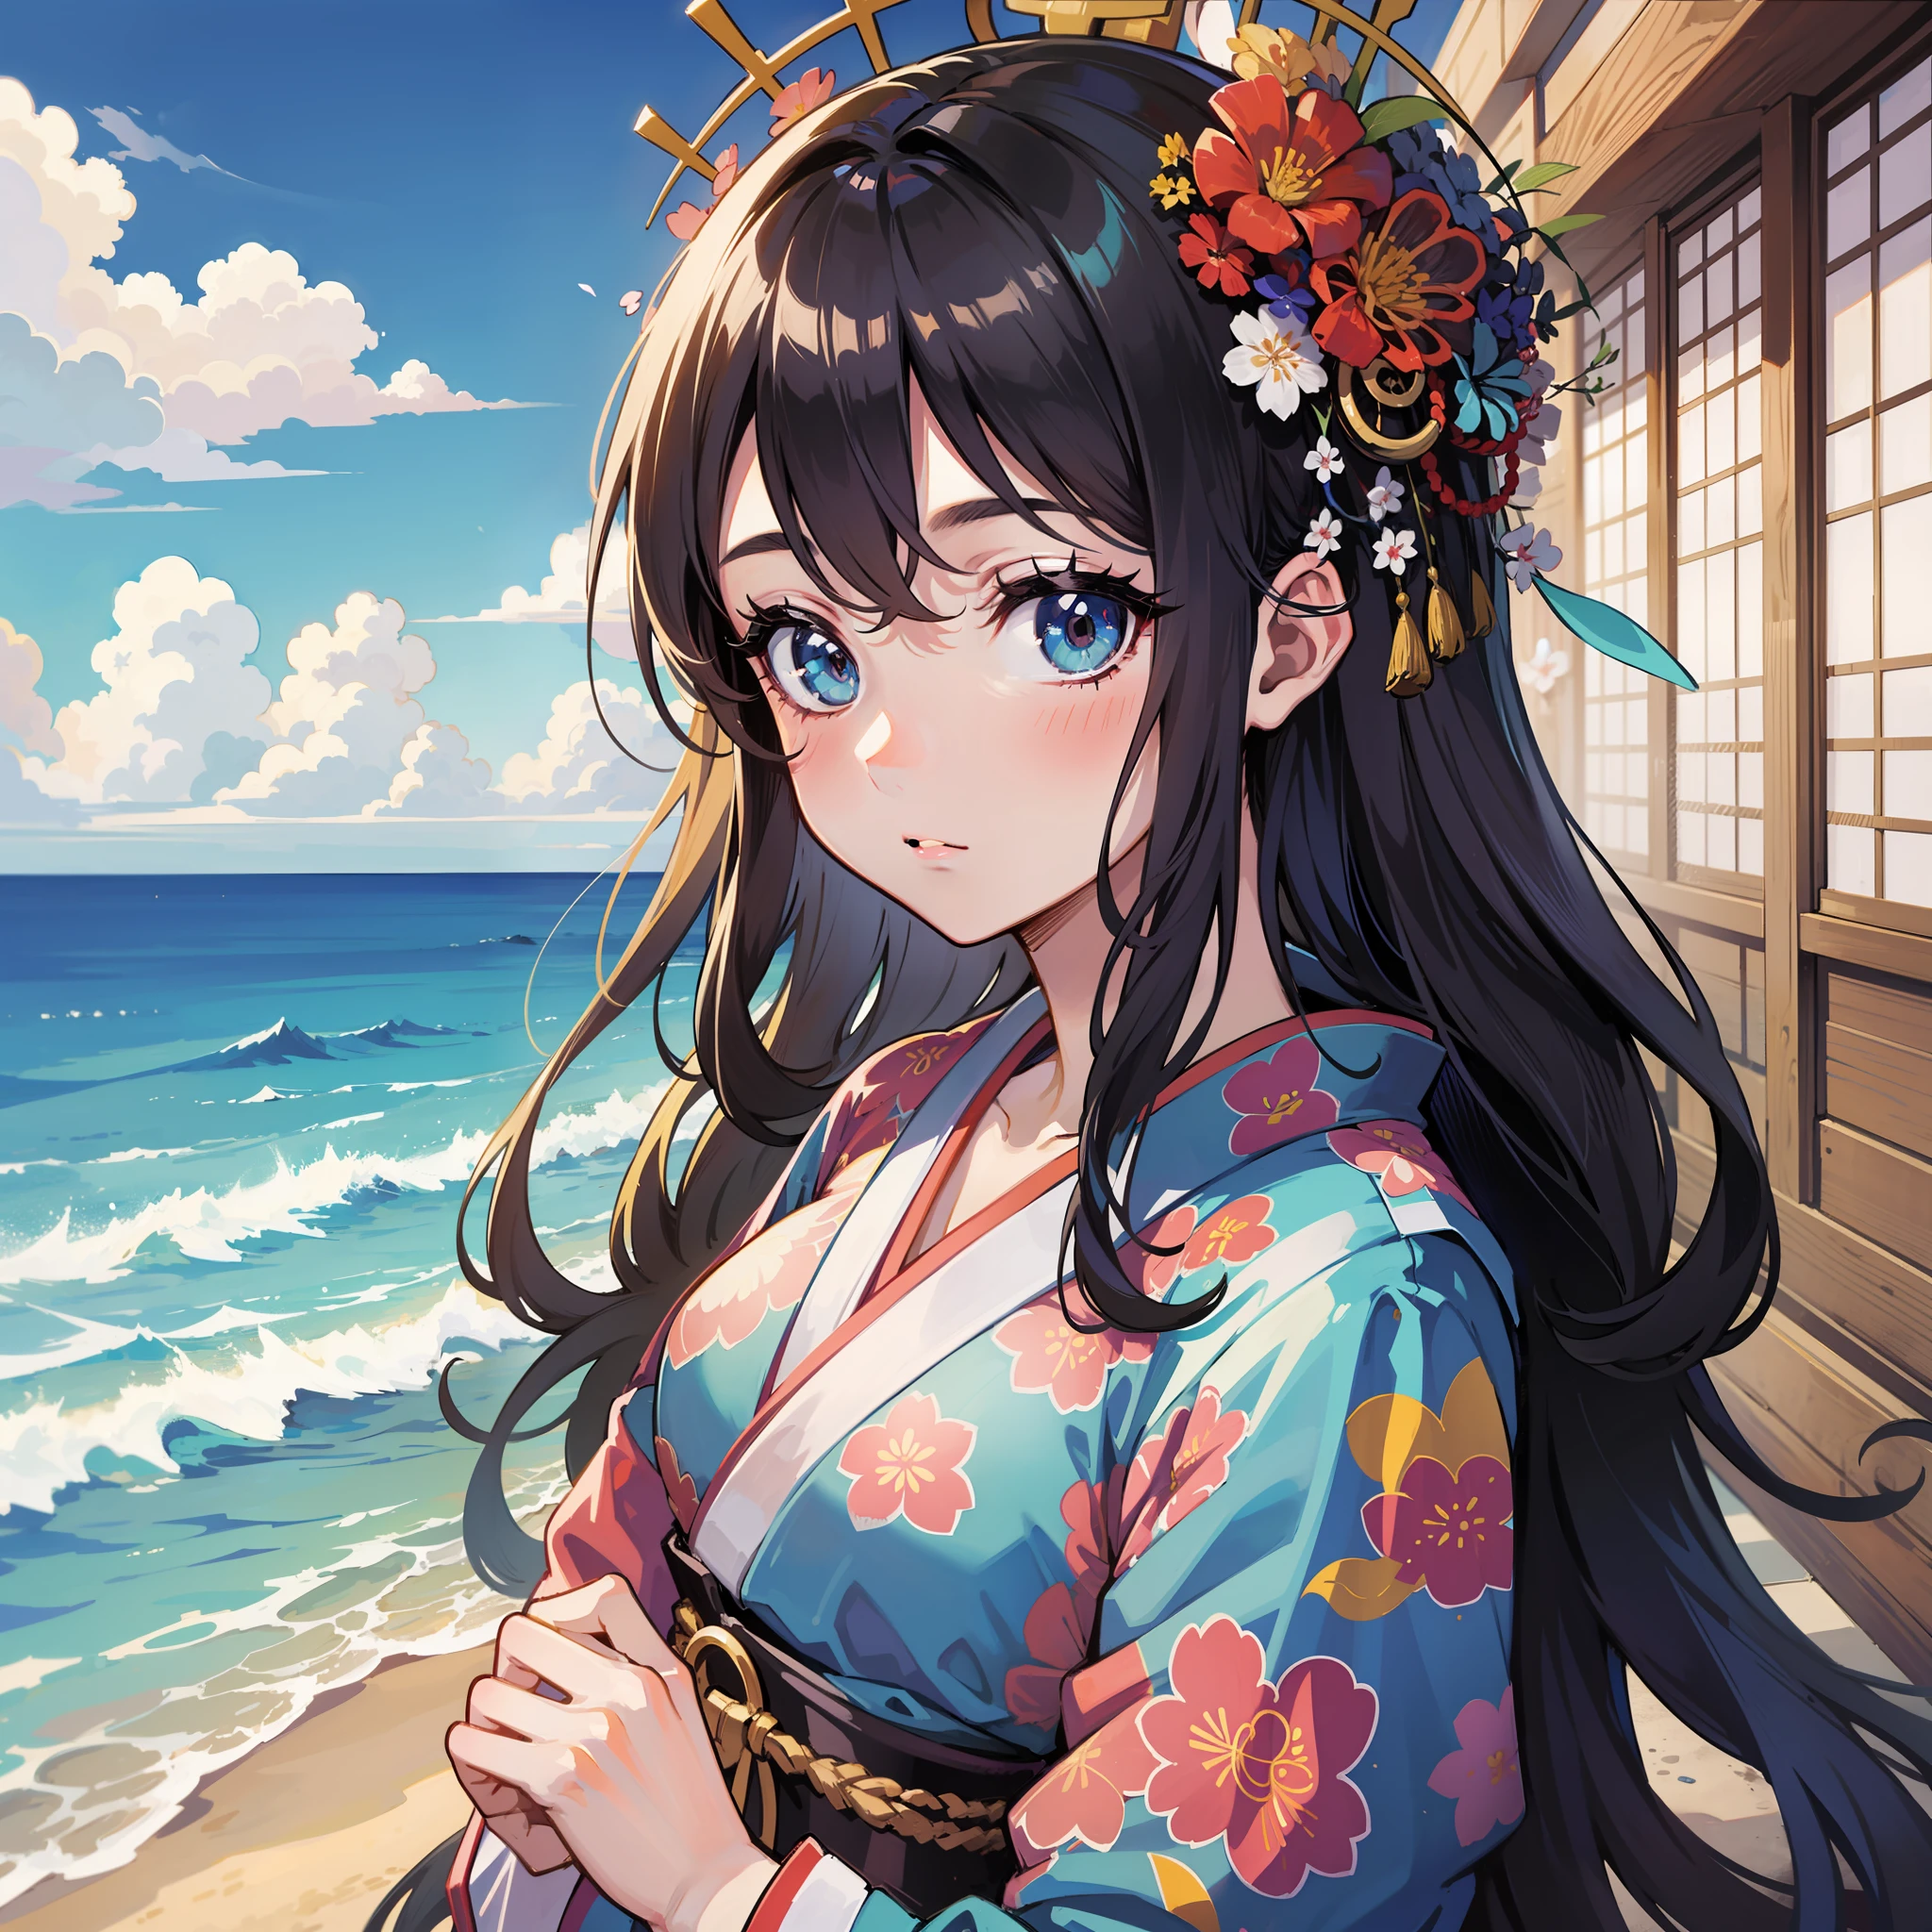 Japanese manga style, girl by the sea, beautiful, masterpiece